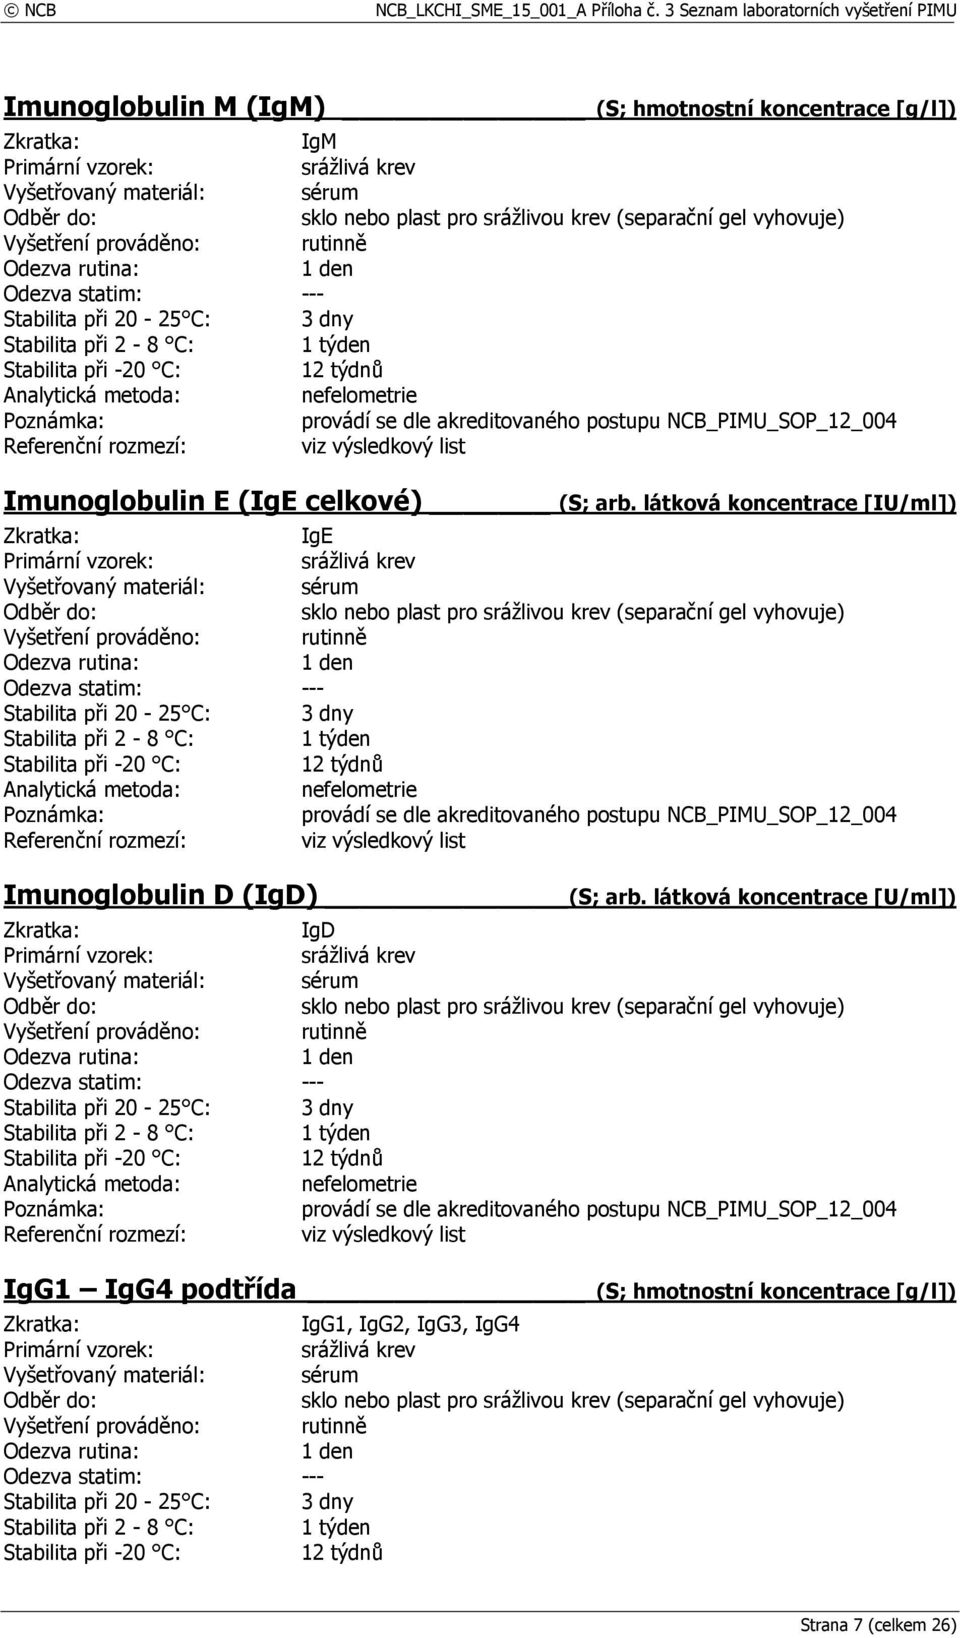 látková koncentrace [IU/ml]) IgE provádí se dle akreditovaného postupu NCB_PIMU_SOP_12_004 Imunoglobulin D (IgD) (S;